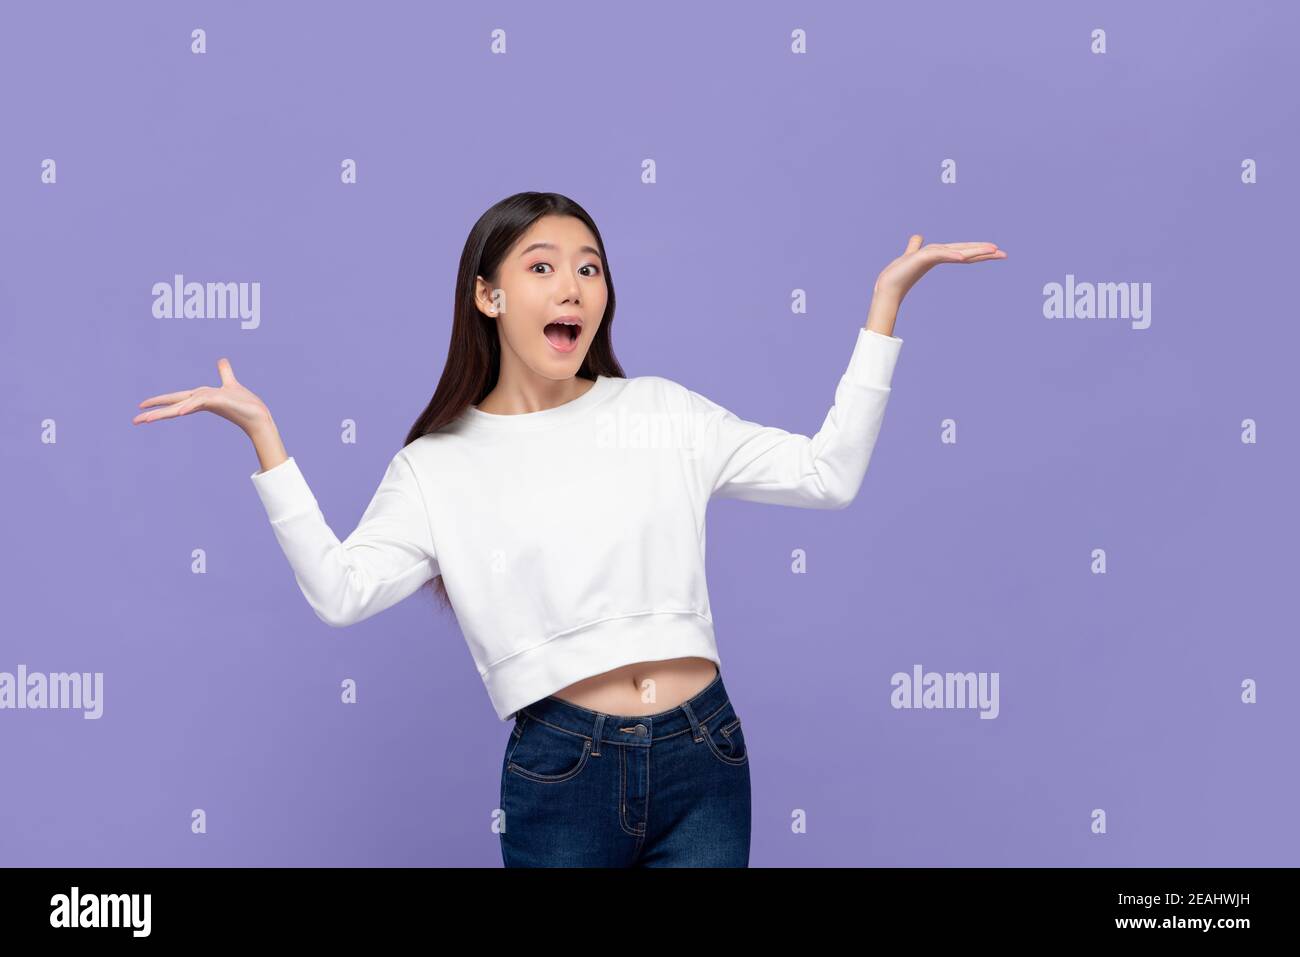 Schöne aufgeregt junge asiatische Frau tun Presenting Geste mit beiden Hände öffnen isoliert auf violettem Hintergrund Stockfoto